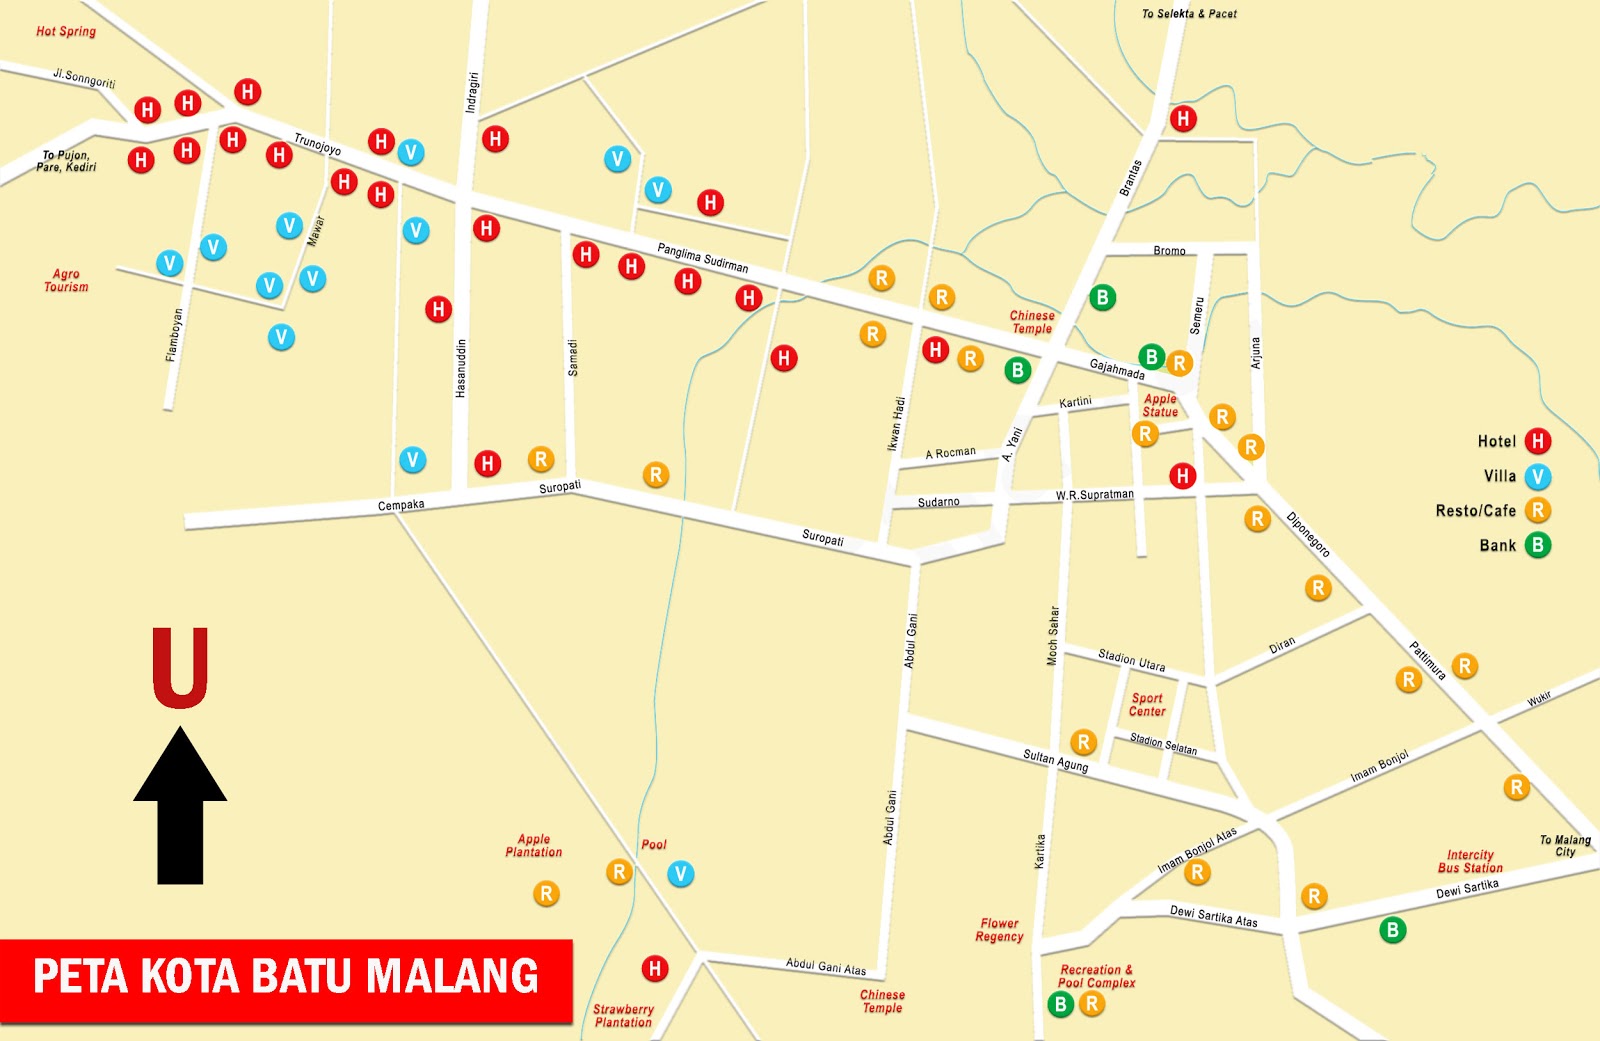 Peta Kota Batu Malang